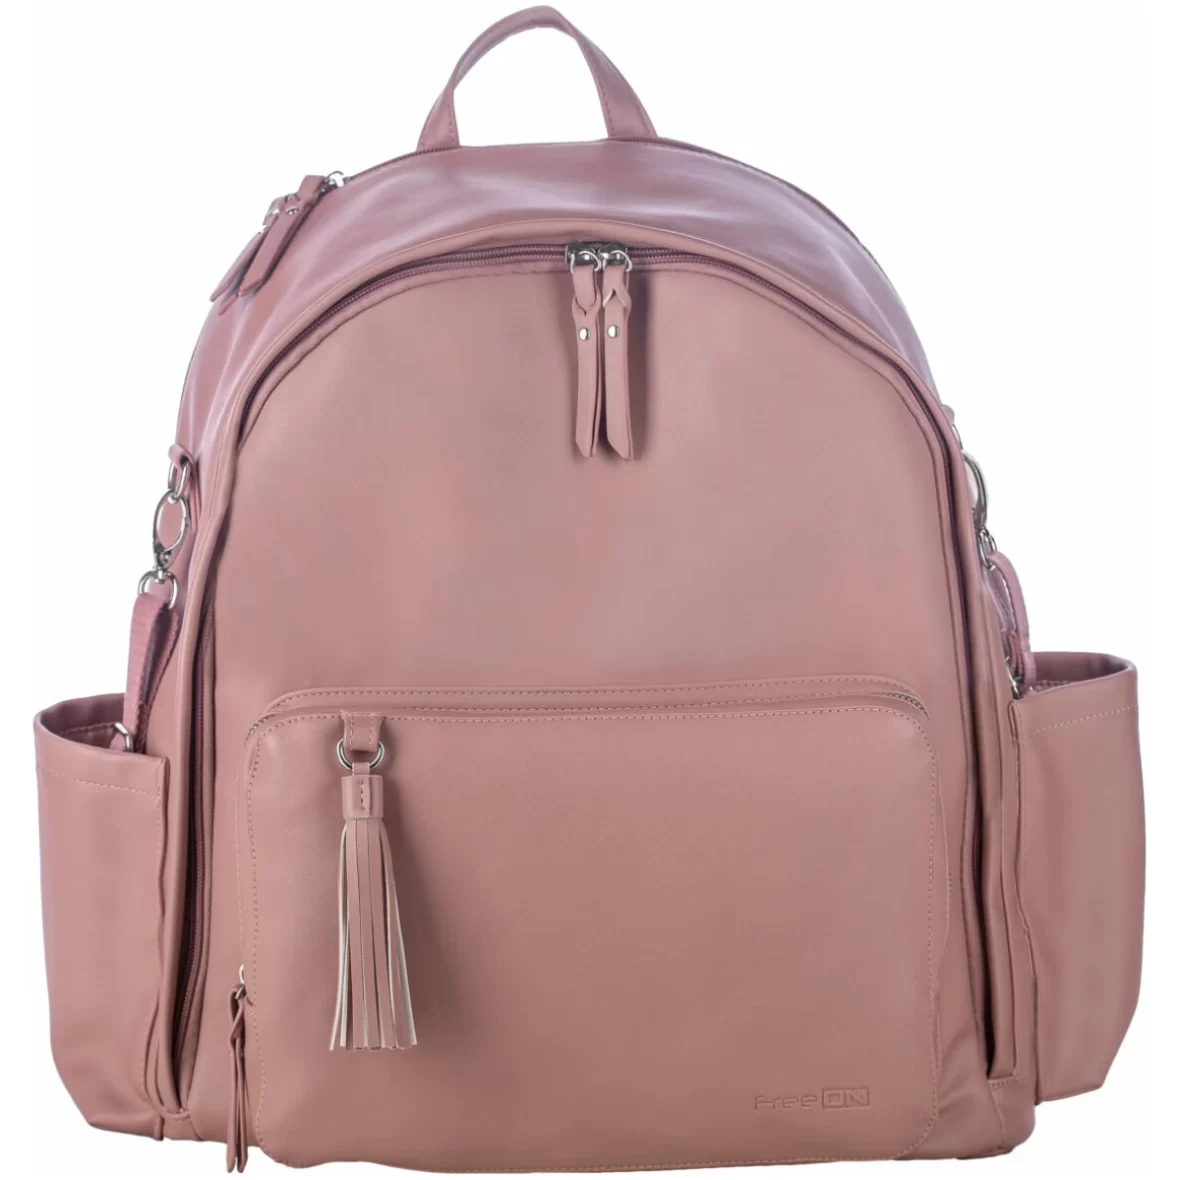 Τσάντα Αλλαξιέρα Backpack Glamour dusty pink